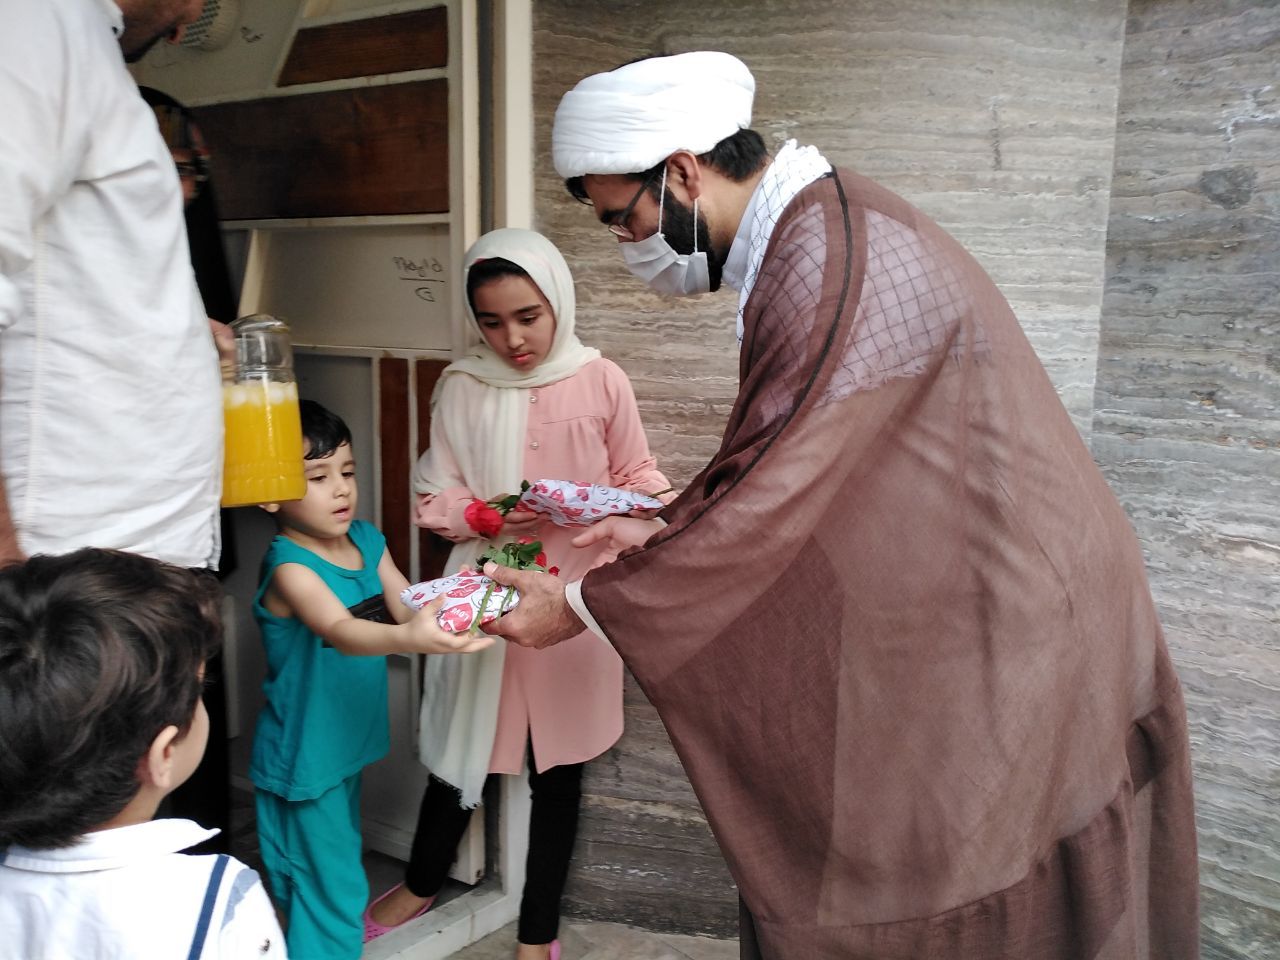 نشر مهربانی بچه های مسجد از توزیع گل تا پشتیبانی از جبهه مقابله با کرونا  